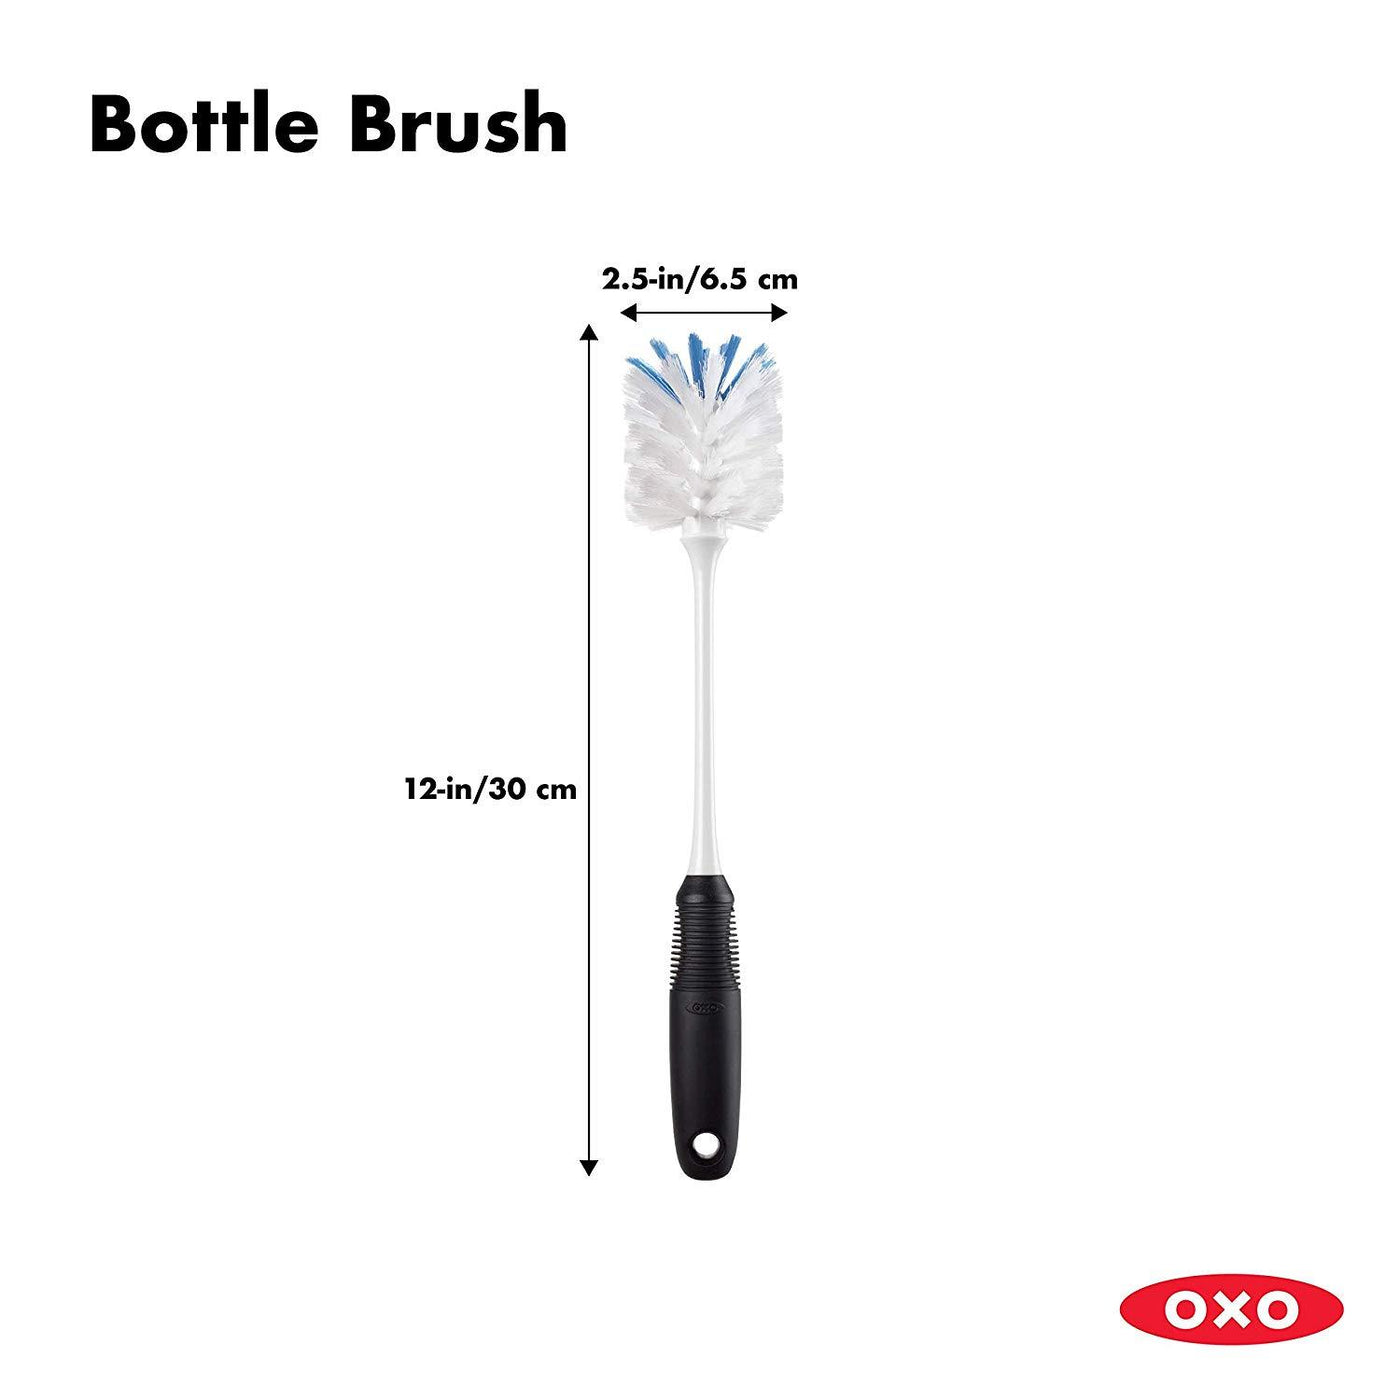 OXO Flexible Neck Bottle Brush